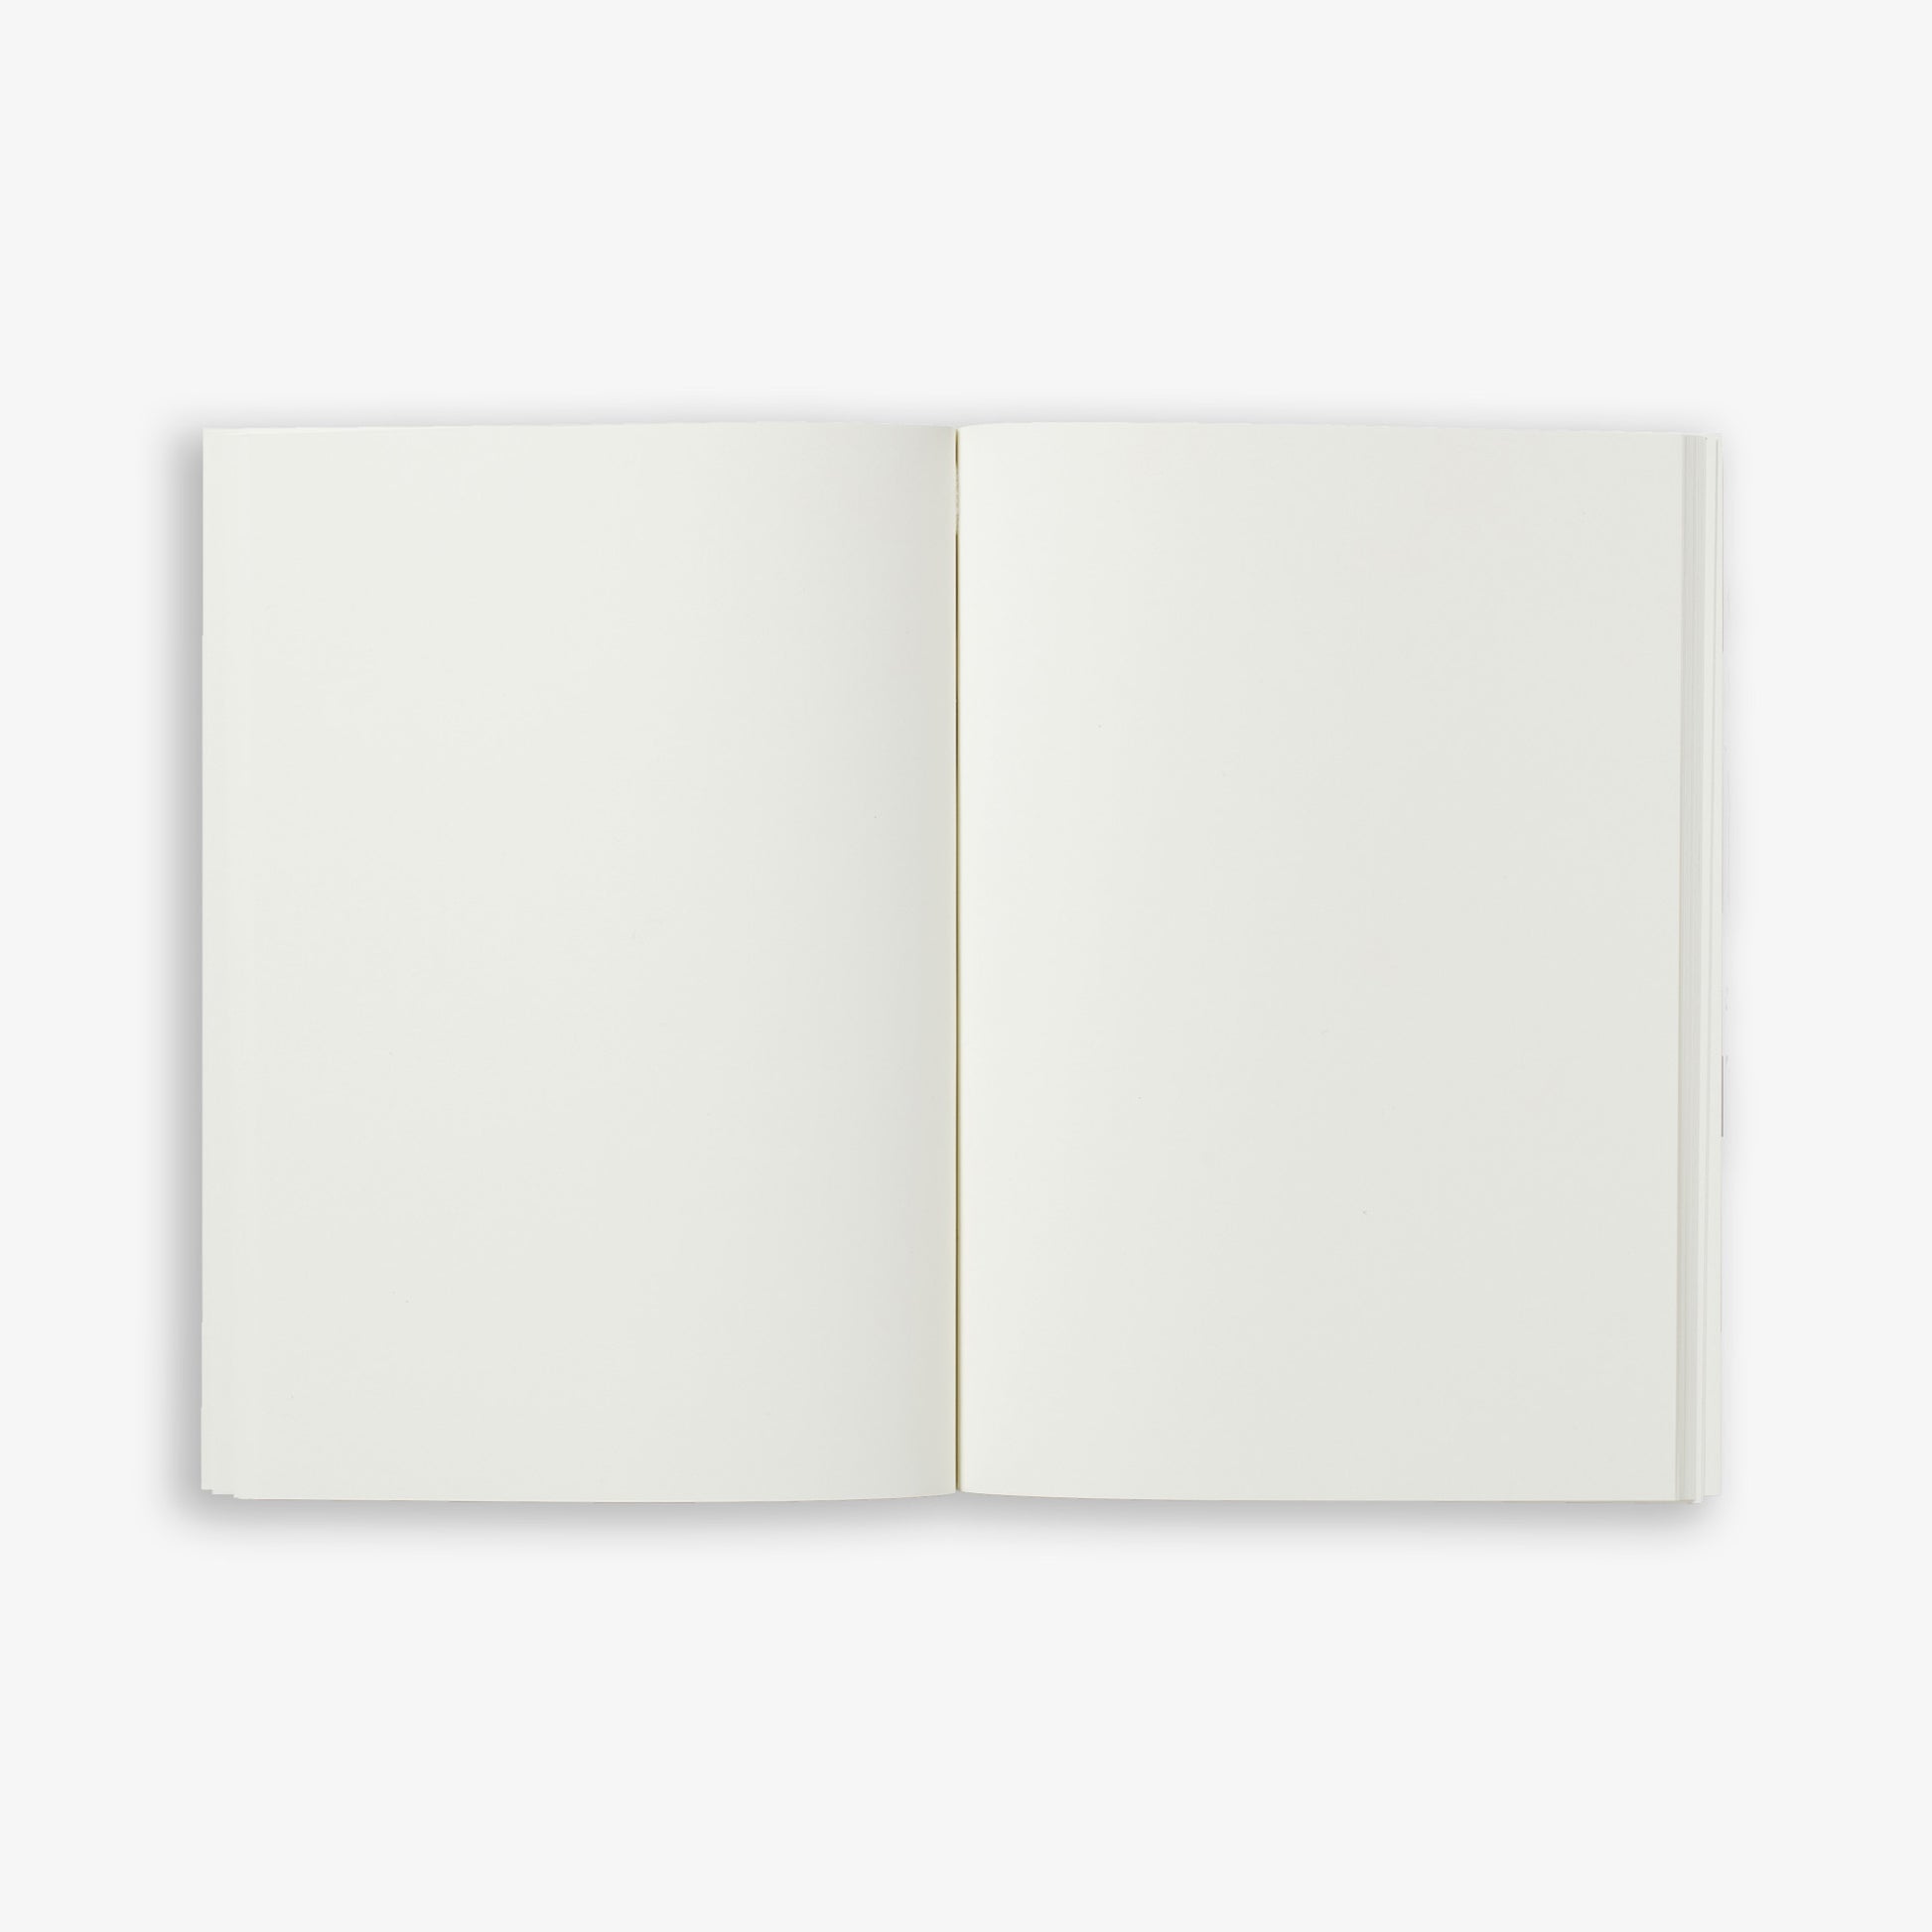 Lille notesbog fra Kartotek med linjer (sider), 65 kr.